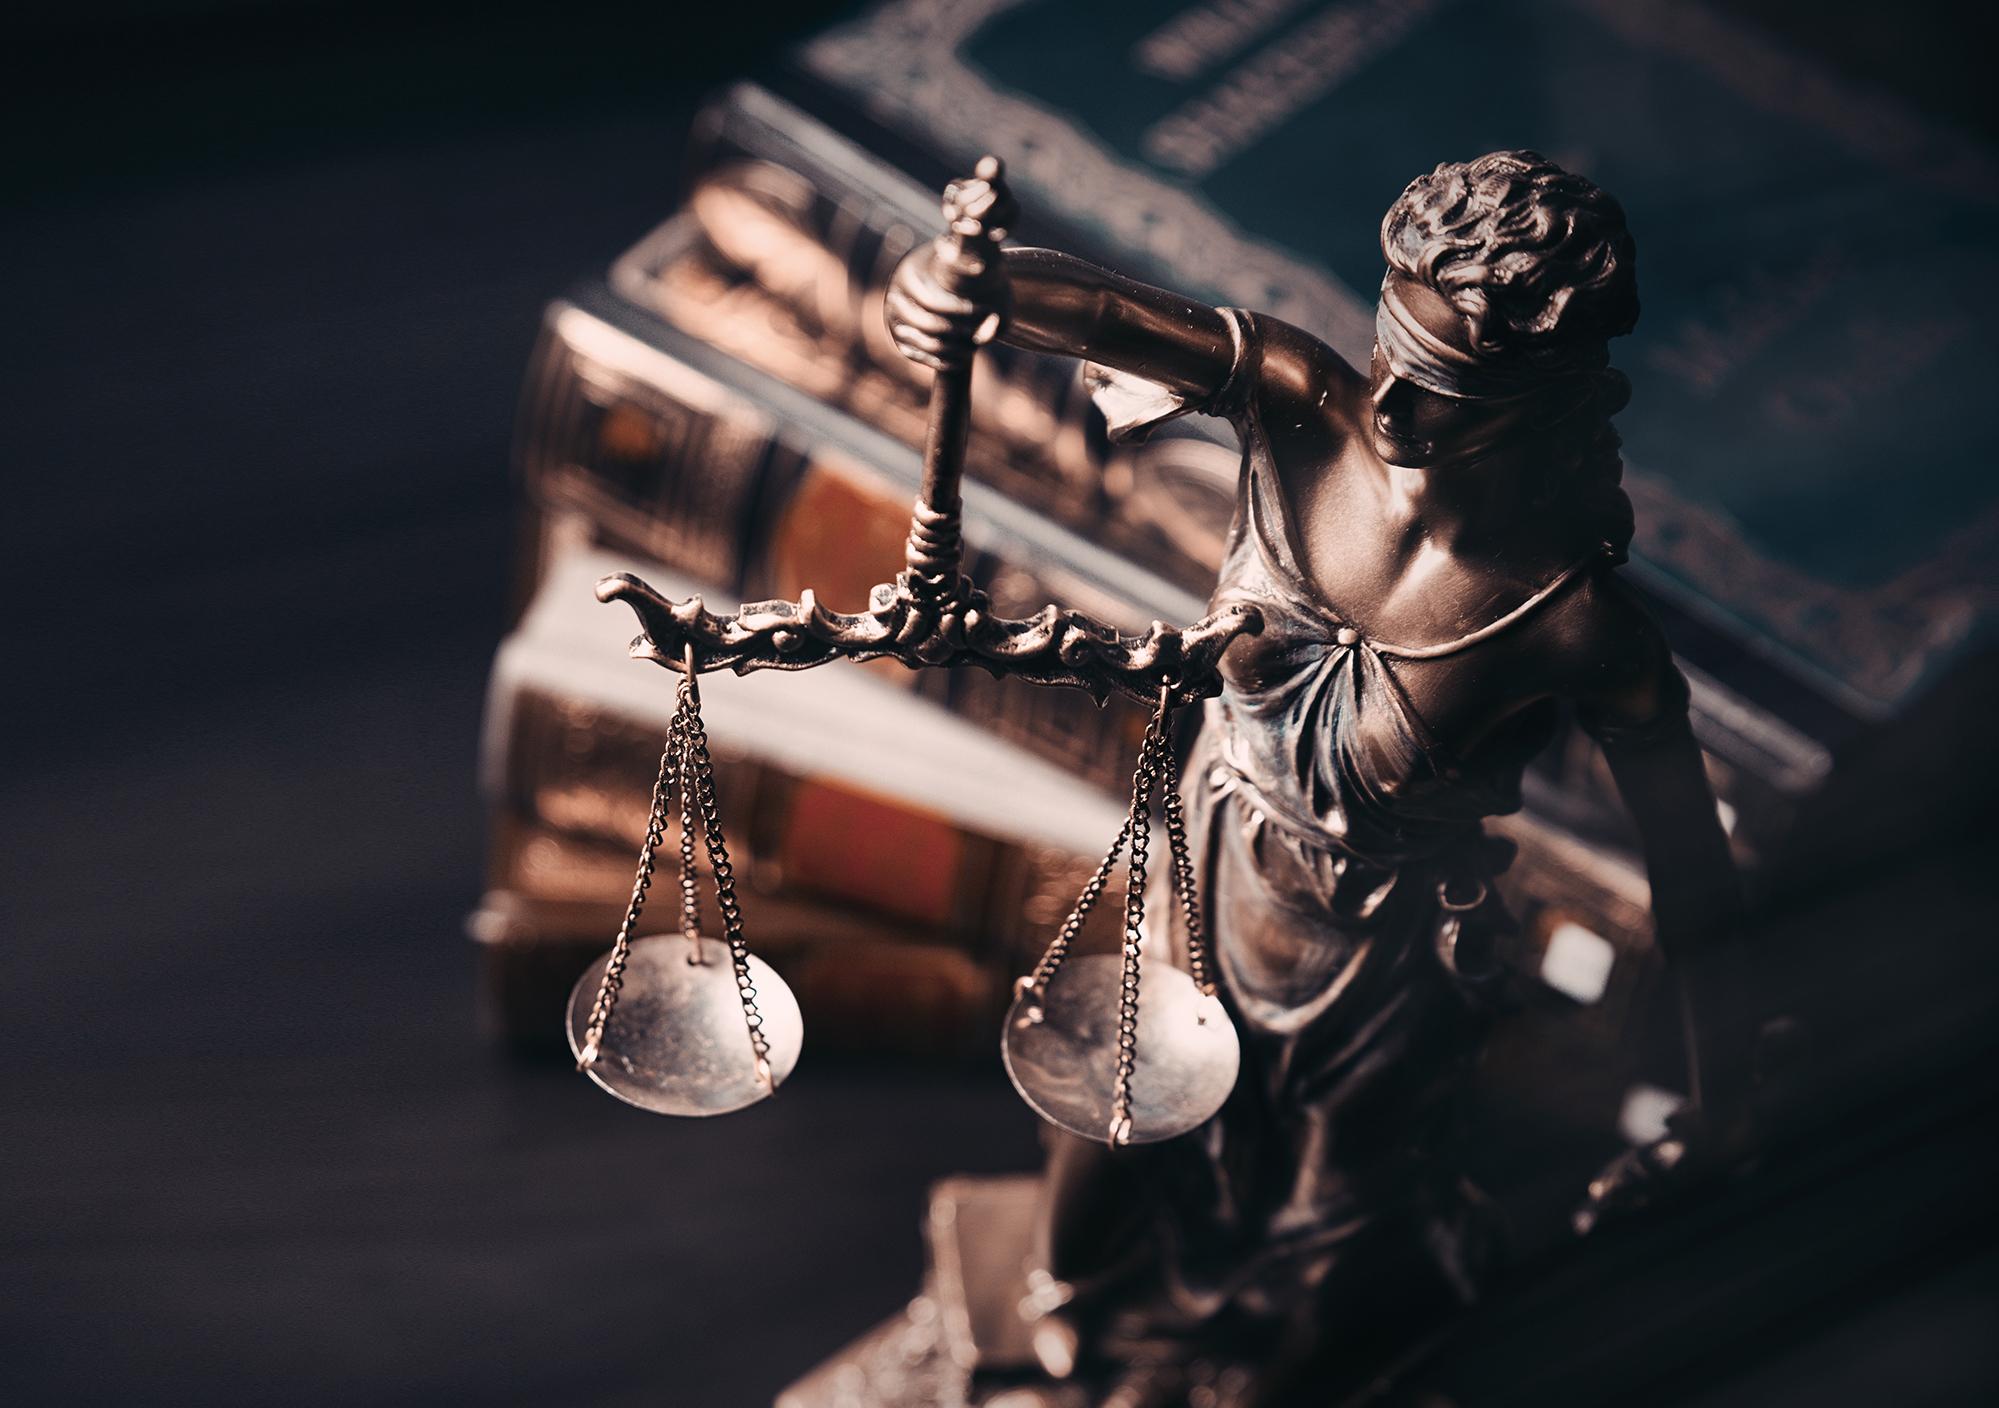 KHKSE: Criminal Defense Law and Civil Litigation